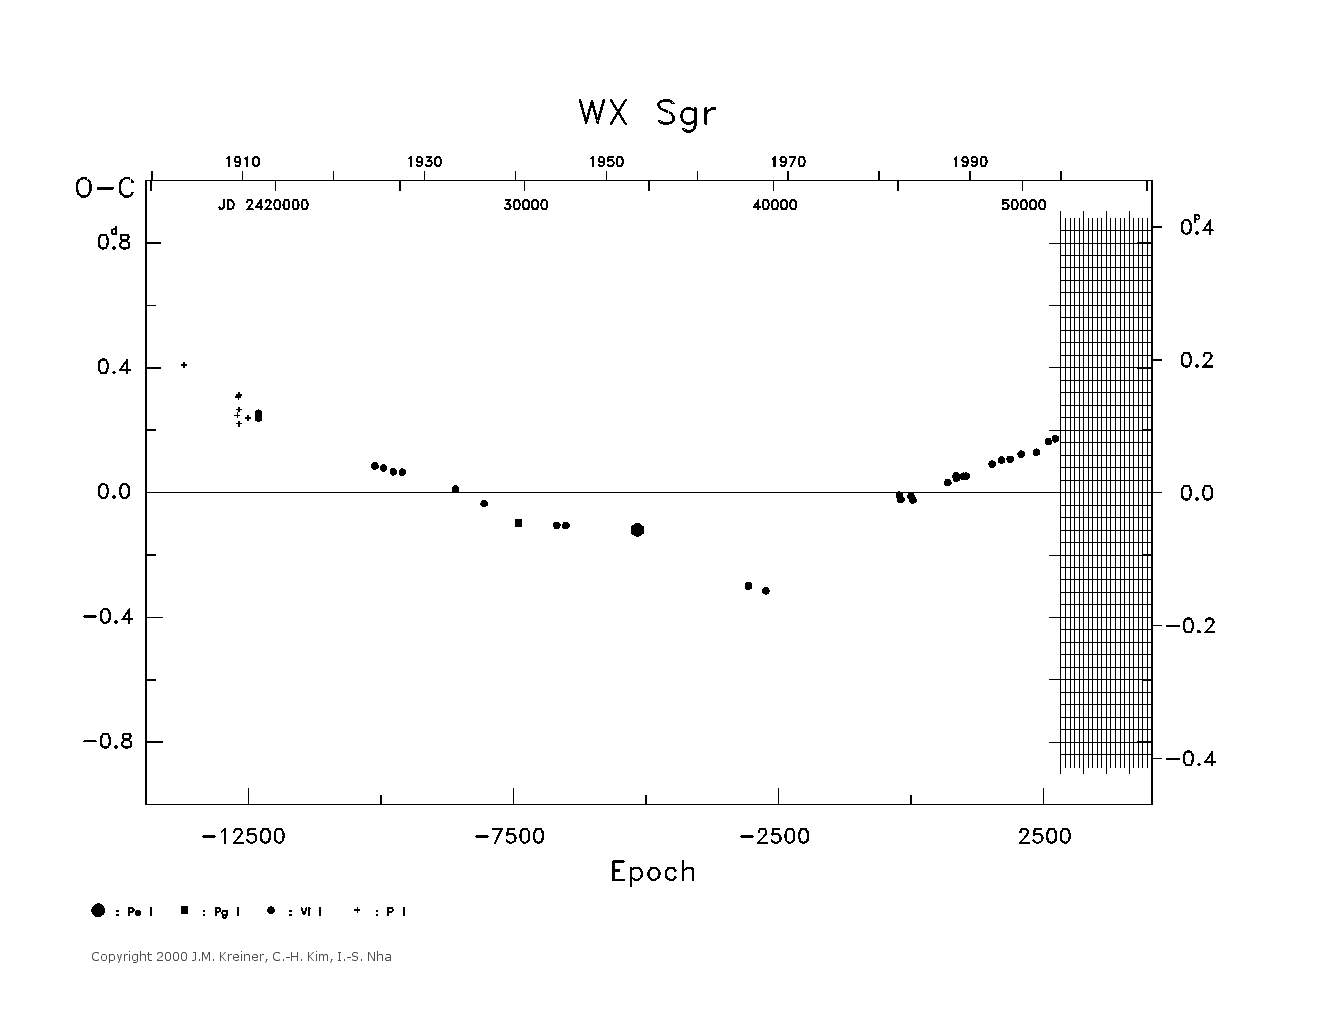 [IMAGE: large WX SGR O-C diagram]